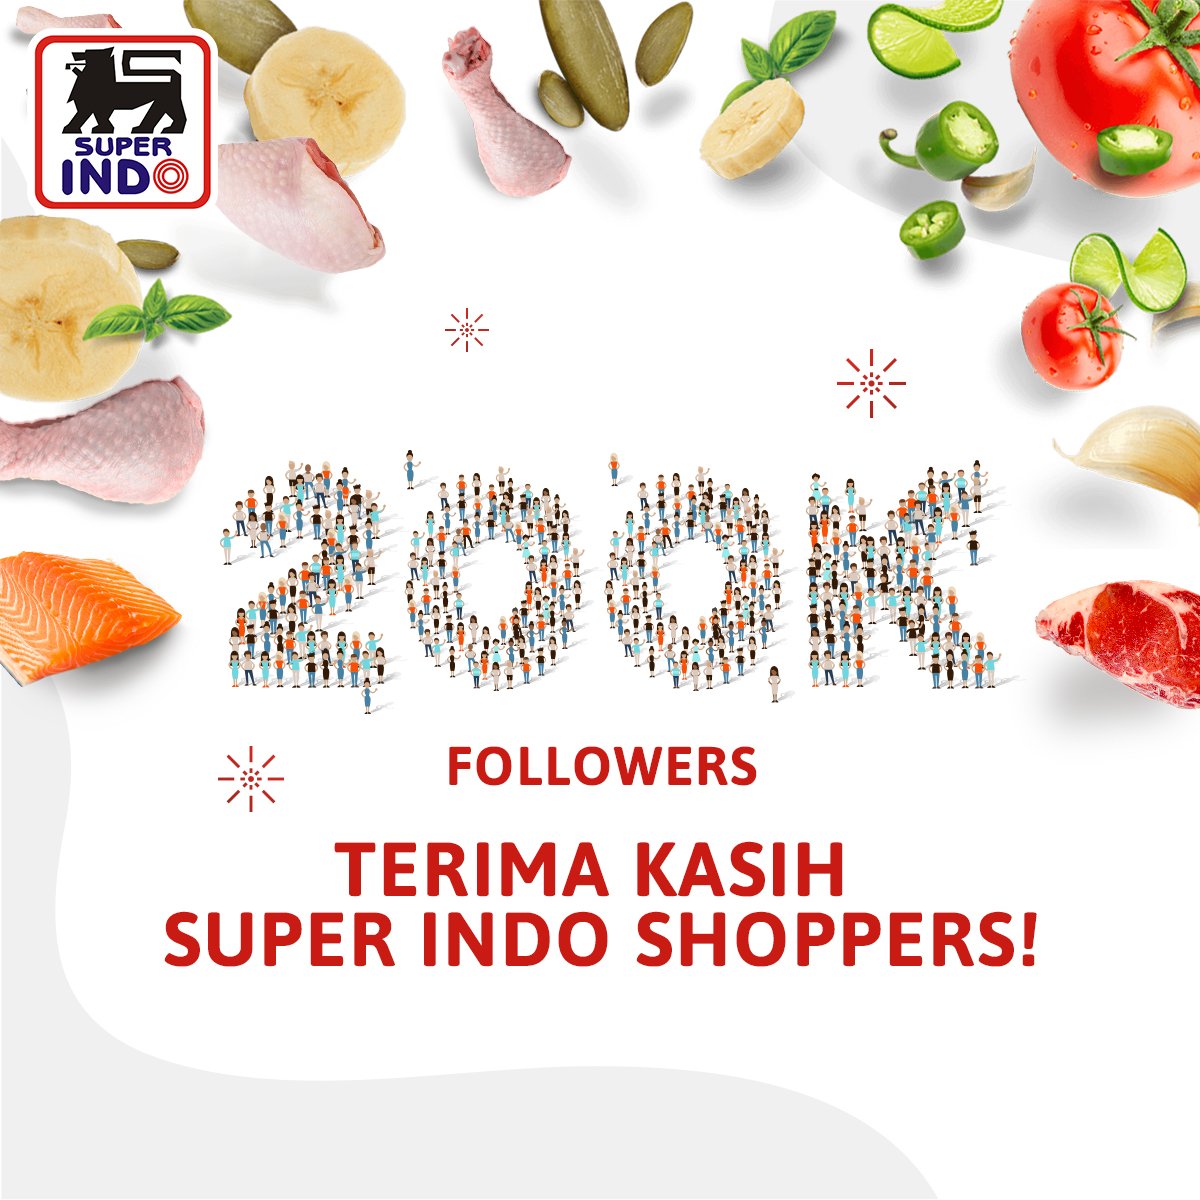 followers instagram super indo kini sudah mencapai 200 000 terima kasih banyak untuk semua super indo - indo followers instagram